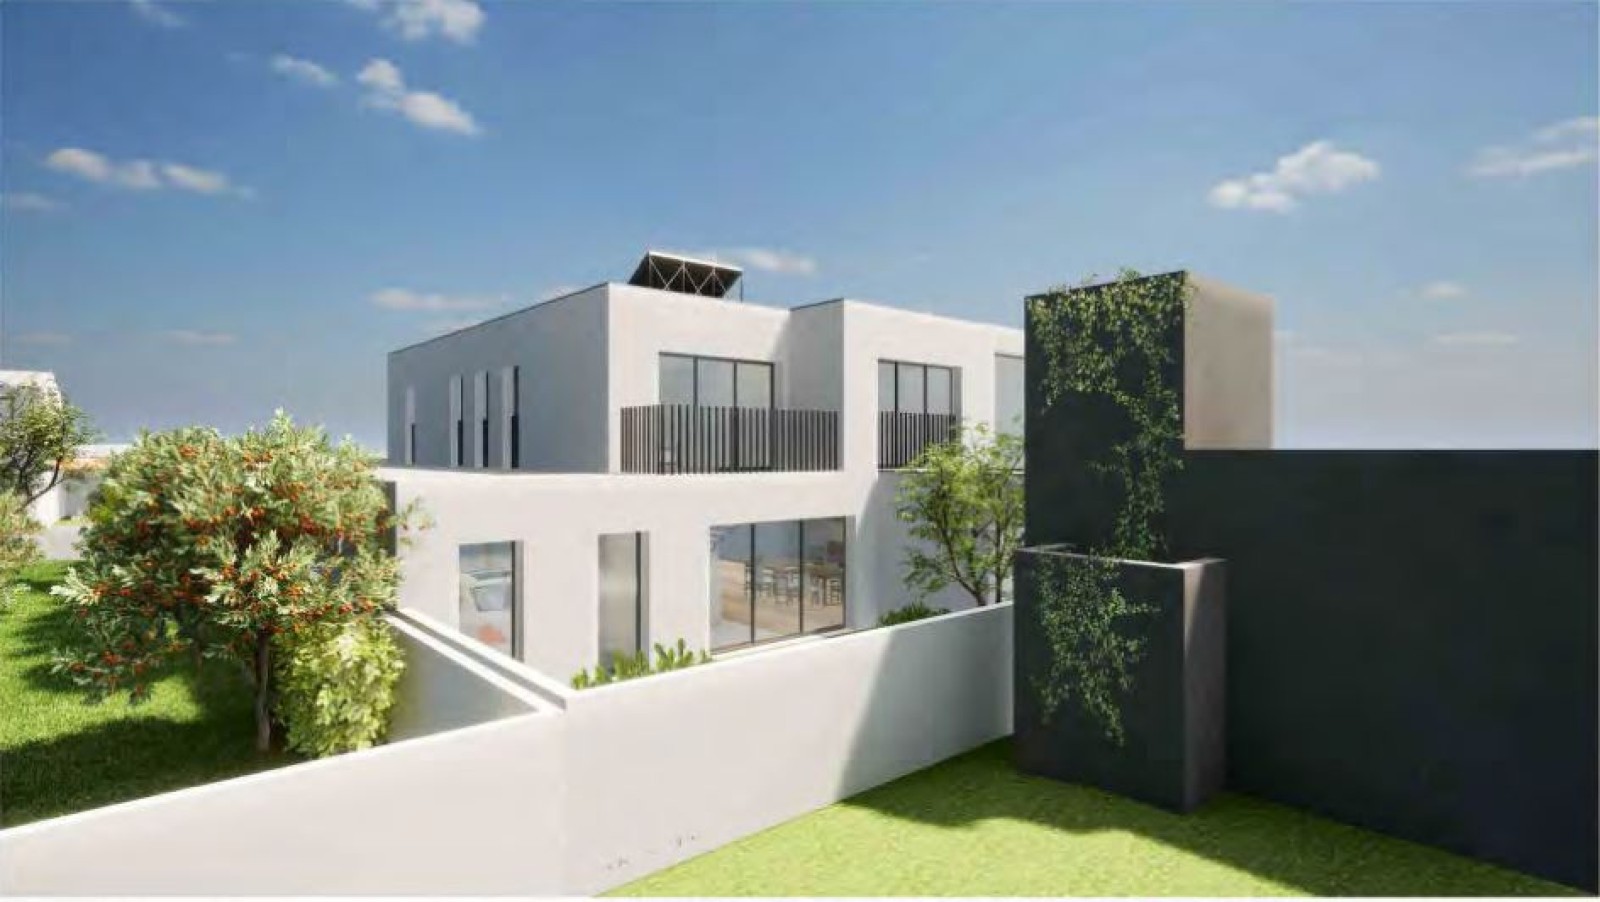 Villa mit 3 Schlafzimmern und Balkonen in Strandnähe, zu verkaufen, Gaia, Portugal_243393